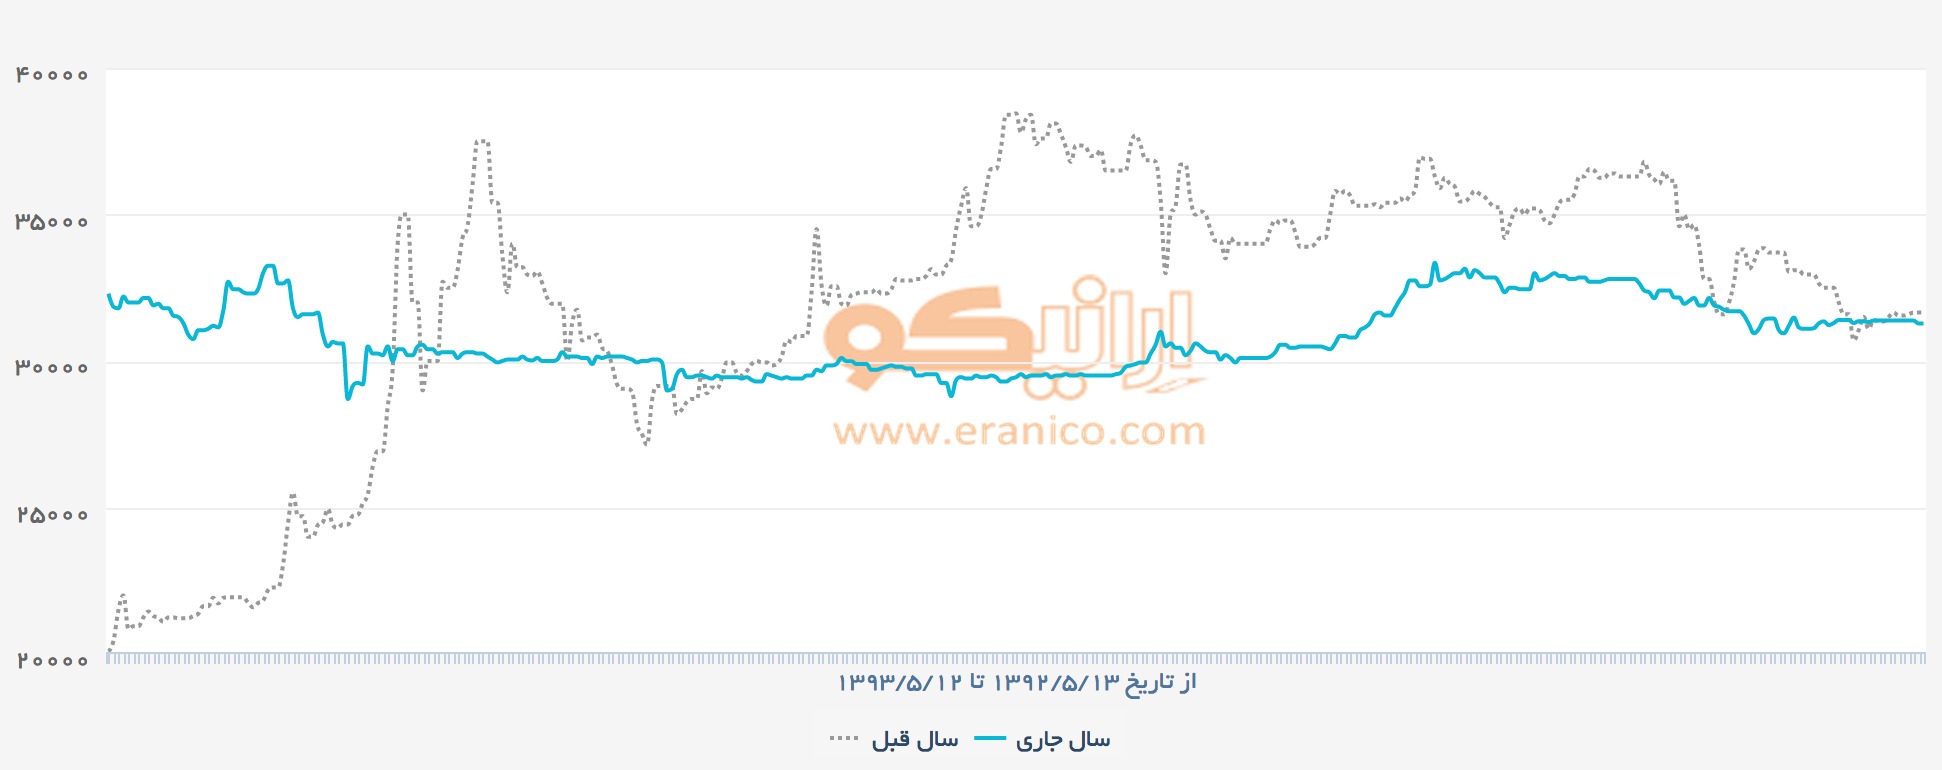 نمودار مقایسه قیمت ارز در بازار آزاد: یکسال اول دولت یازدهم و یکسال پایانی دولت دهم